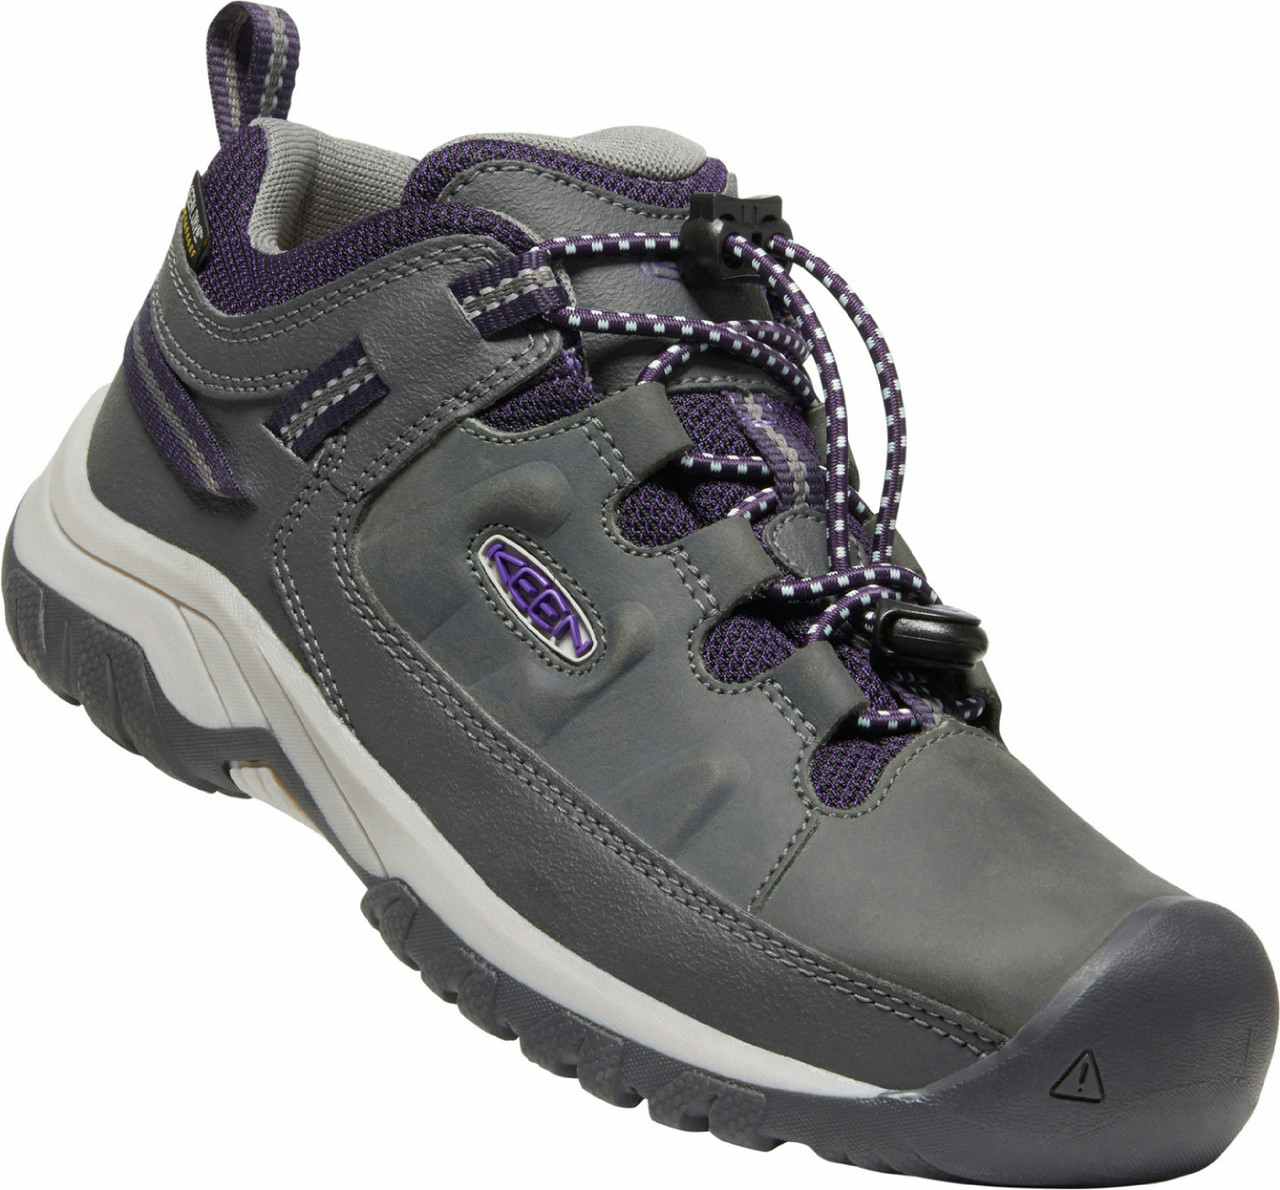 Chaussures imperméables Targhee Low Aimant/Tilla violet